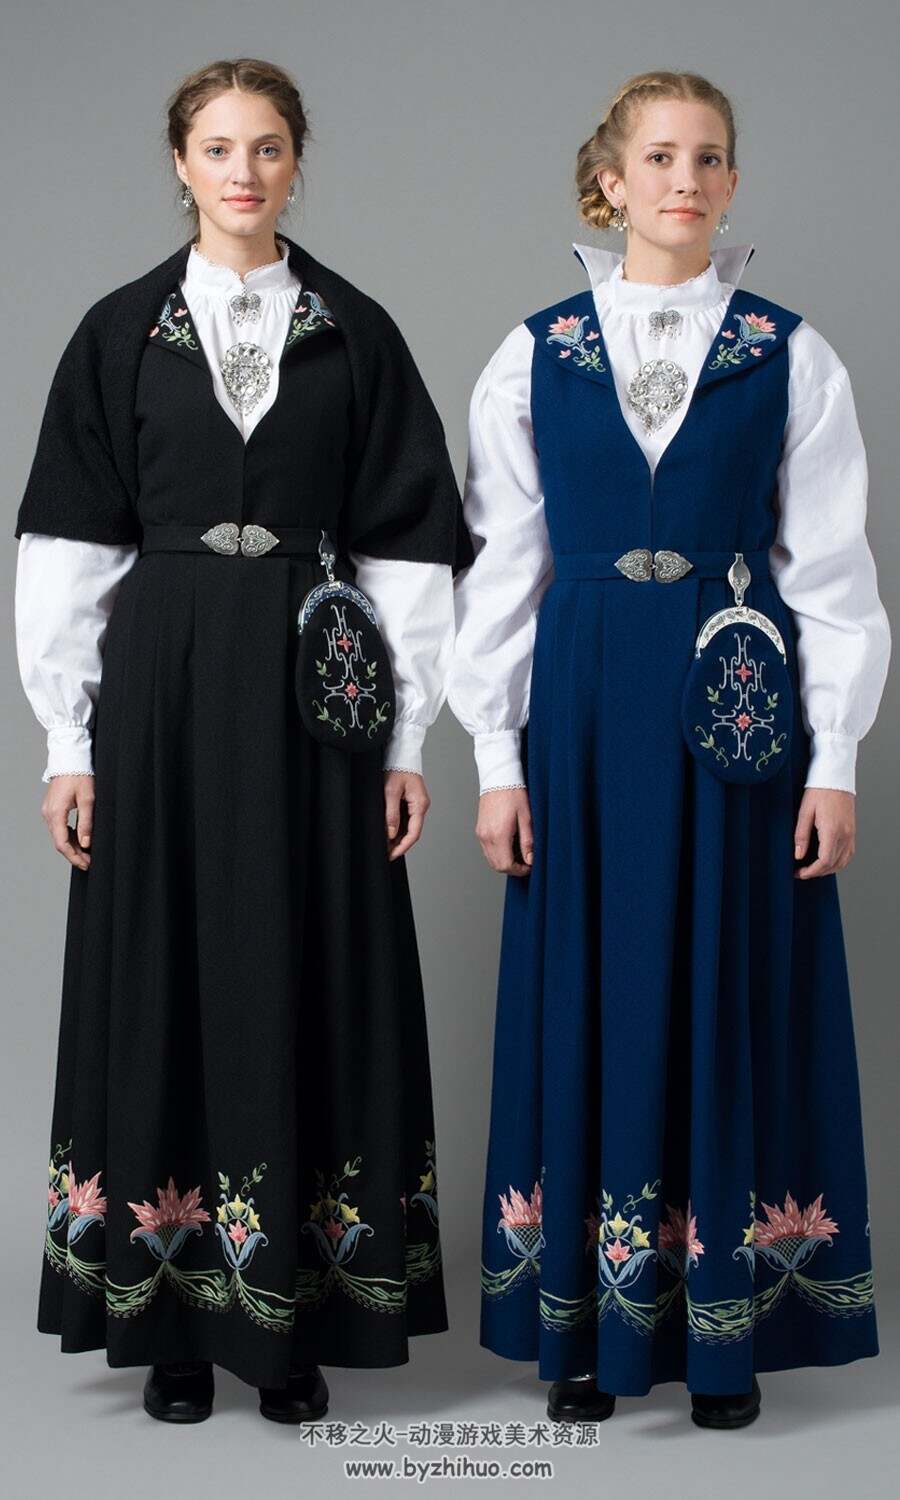 北欧挪威传统服饰参考图集178p